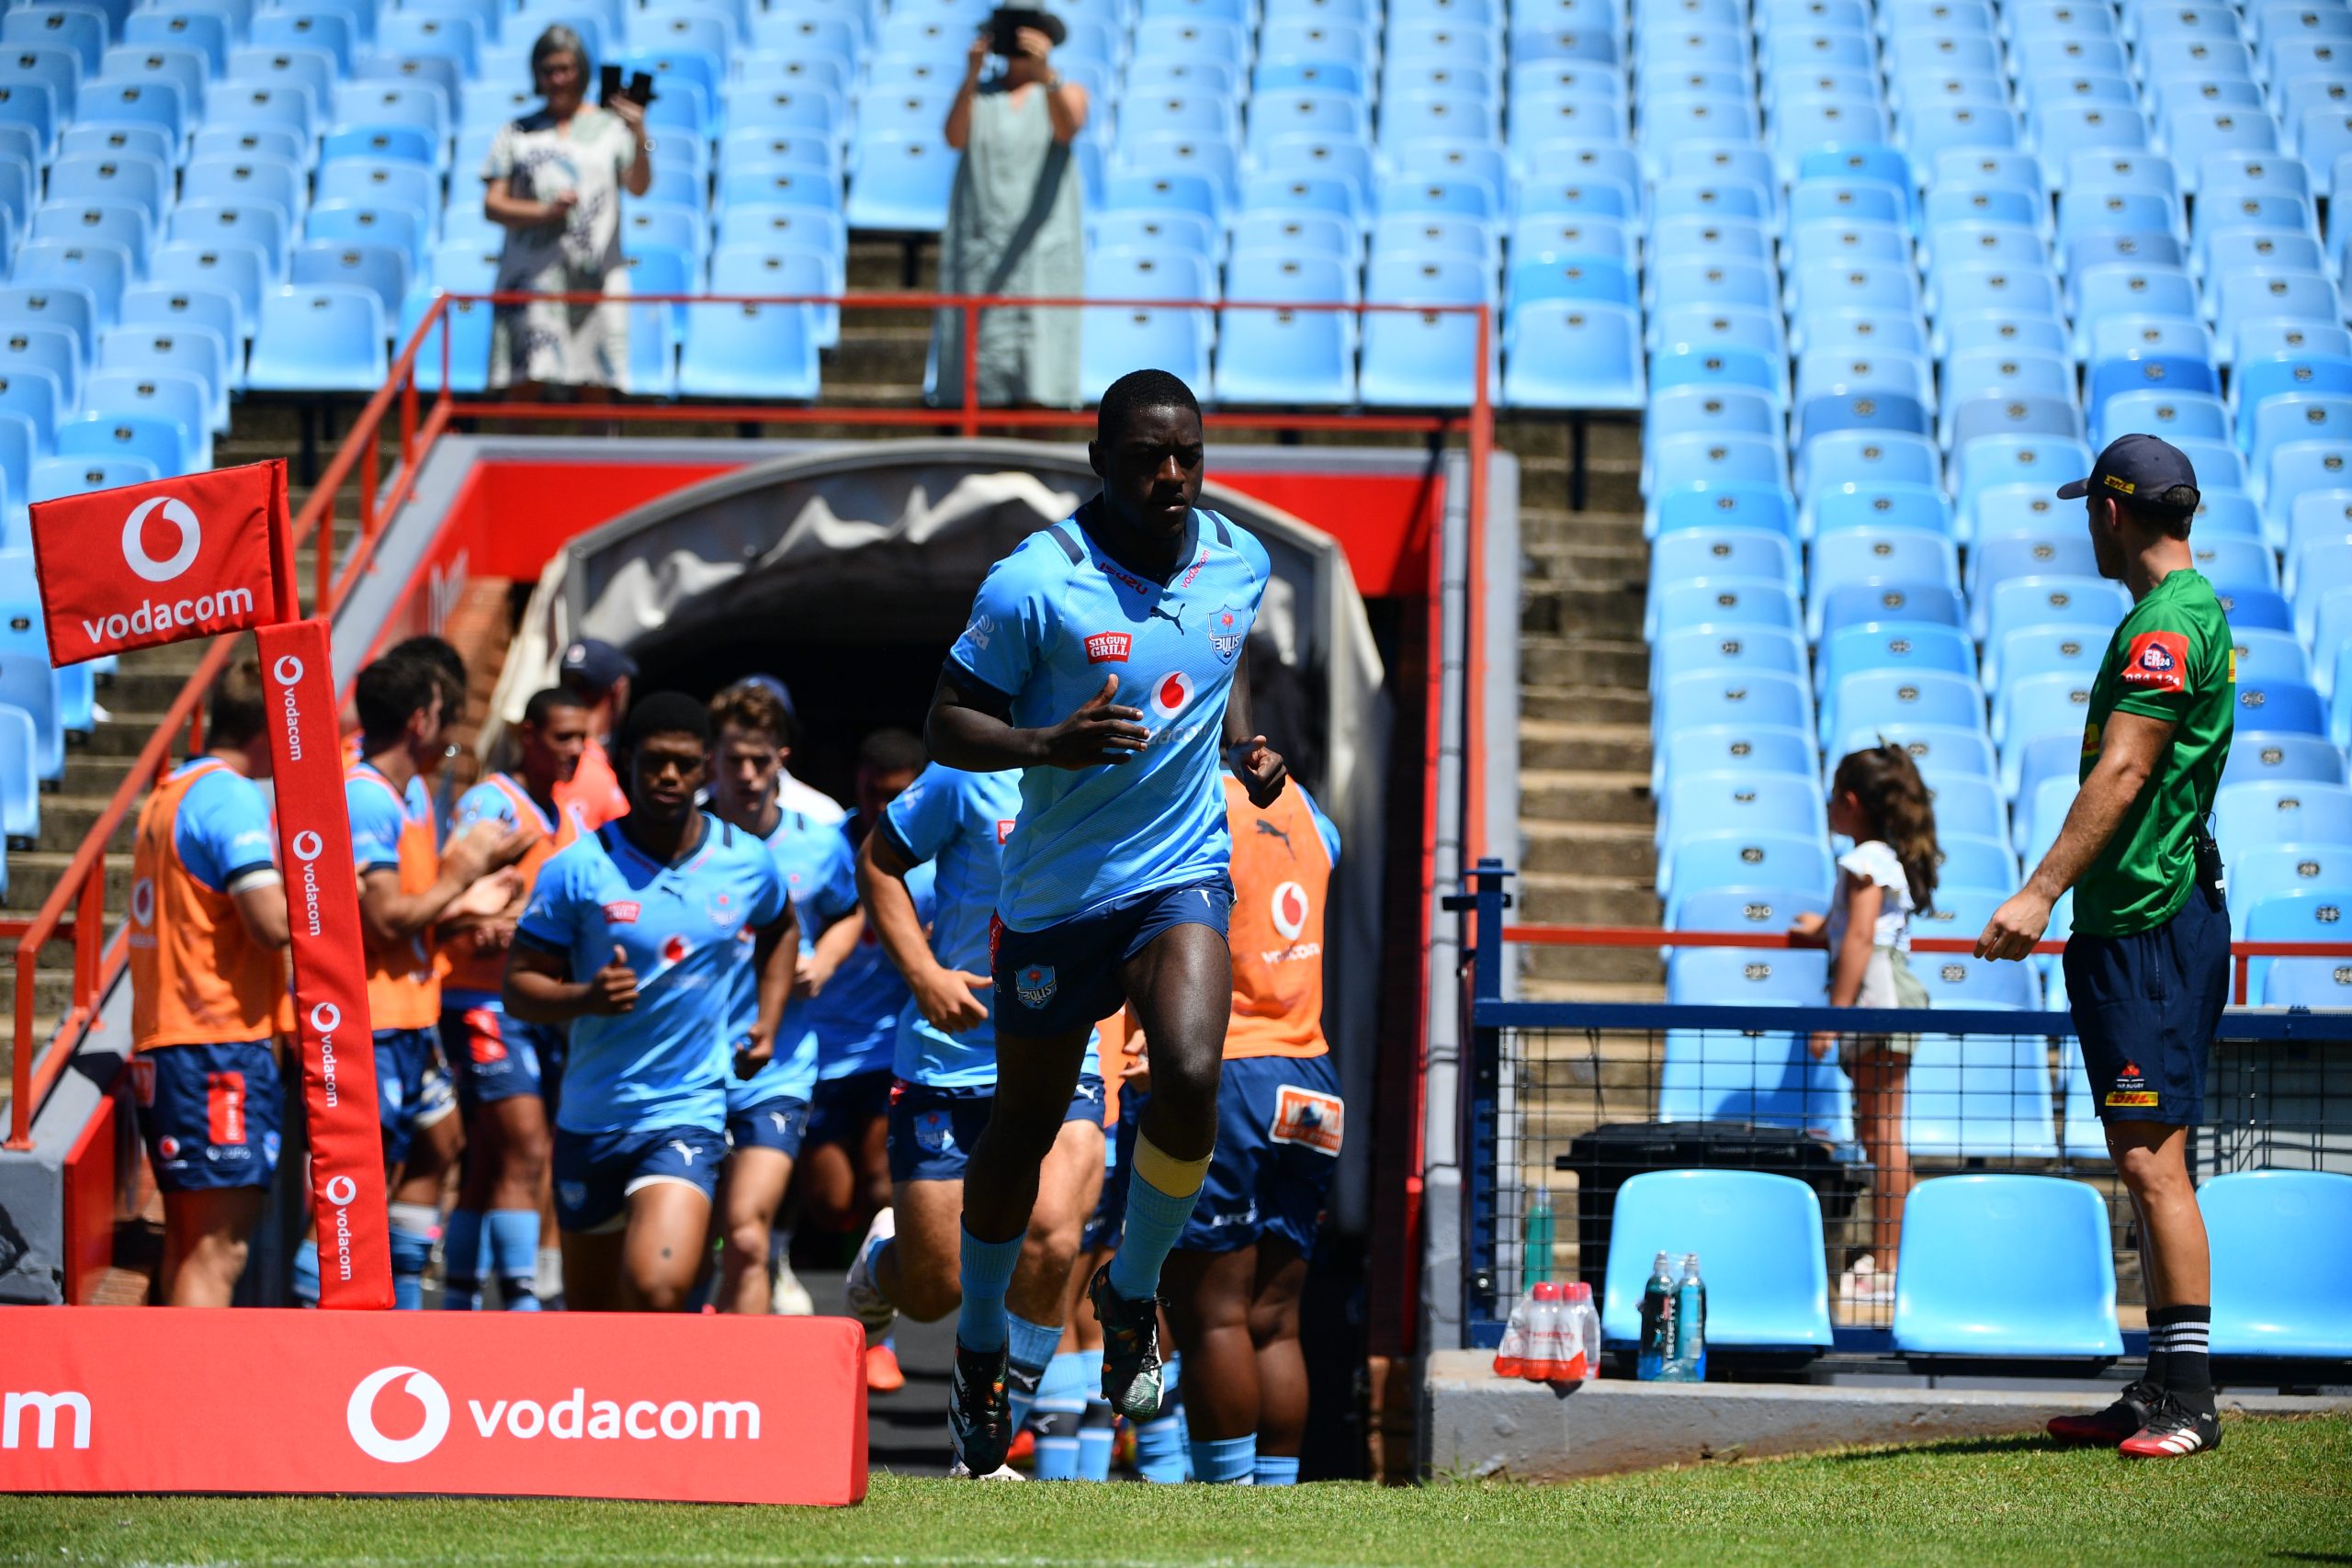 Vodacom Bulls under-20 clash in Durban rescheduled